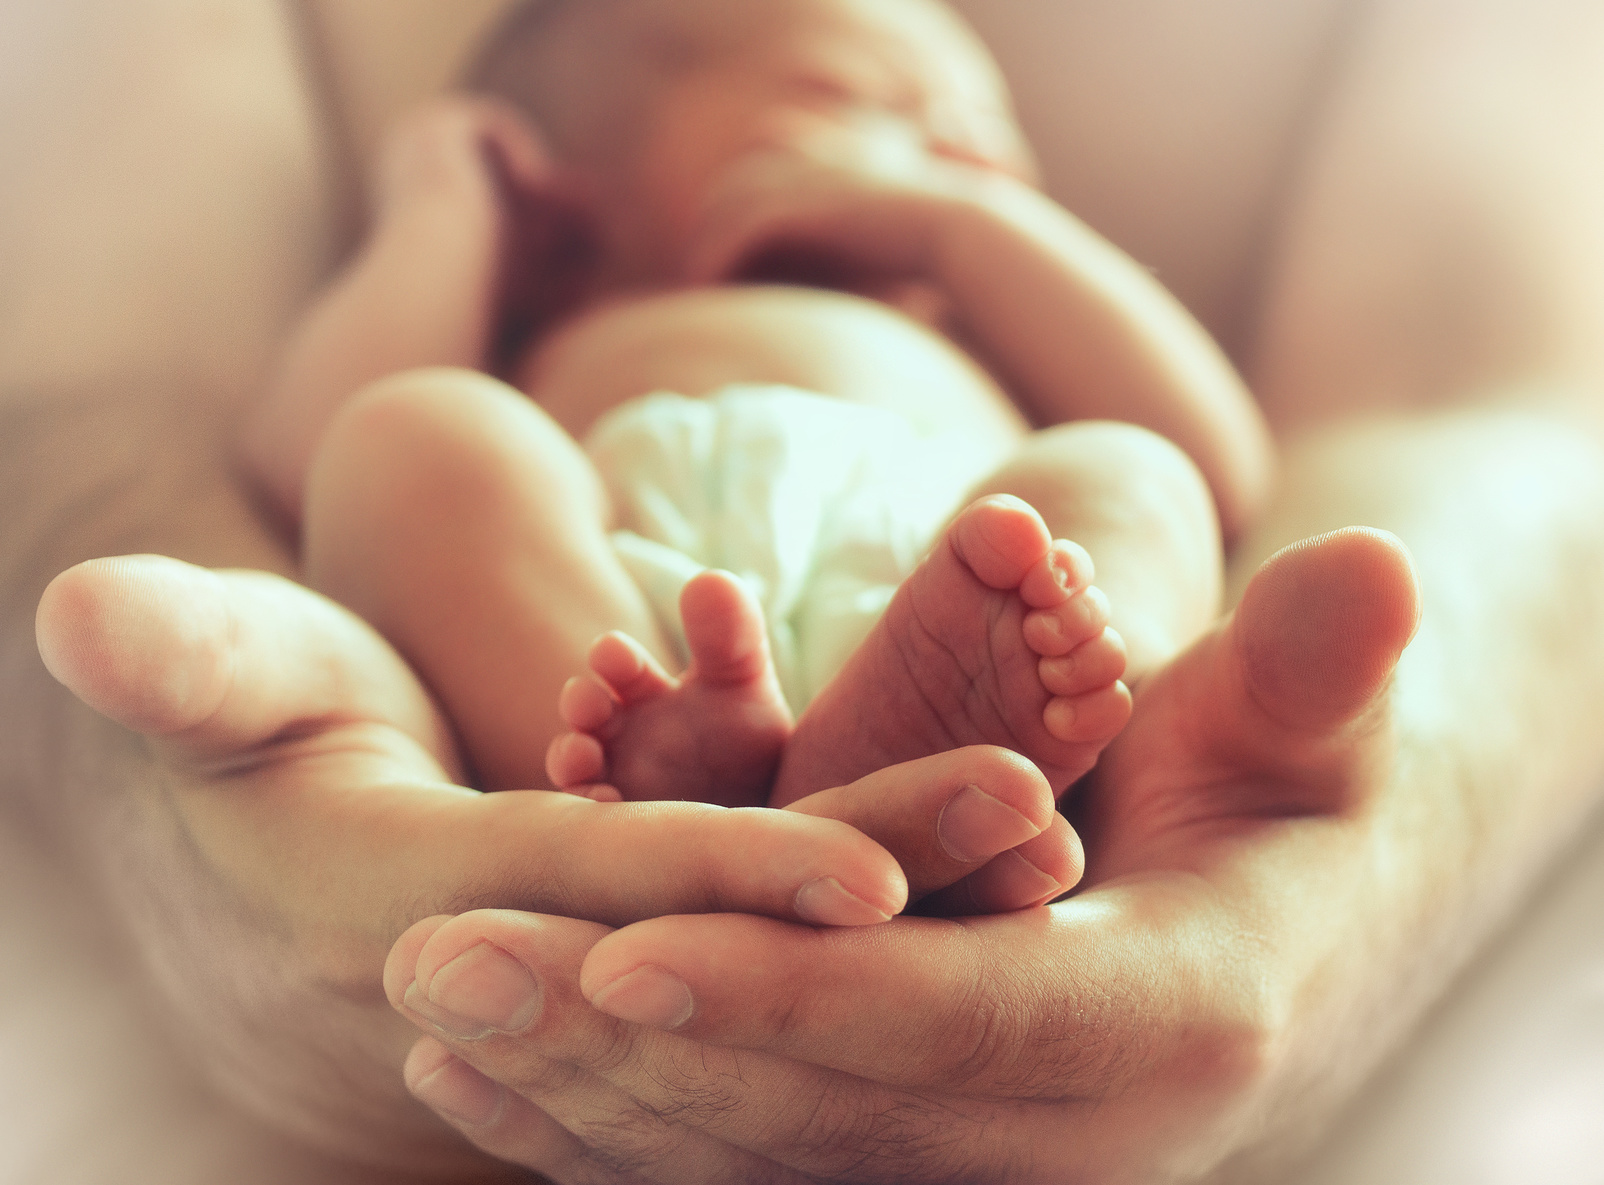 Unglaubliche Geschichte: Frau bekommt Baby von verstorbenem Mann